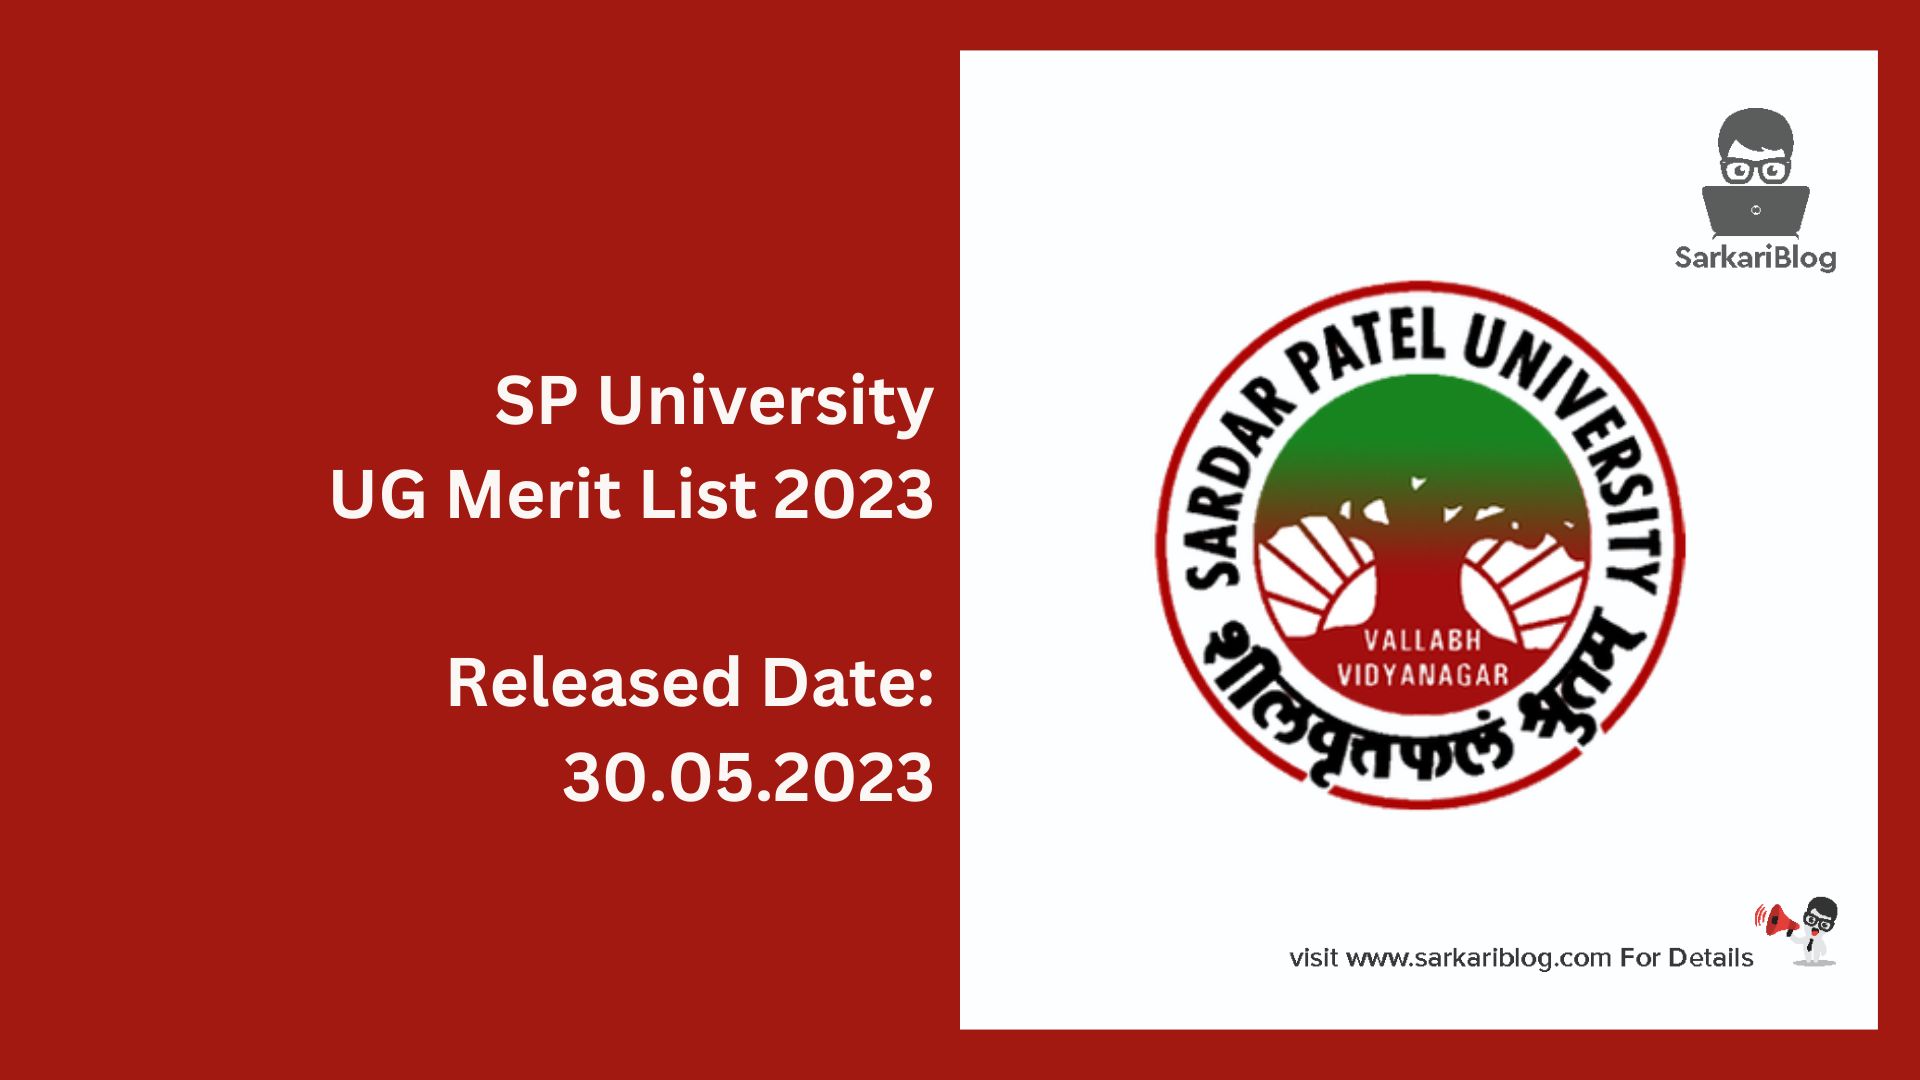 SP University UG Merit List 2023